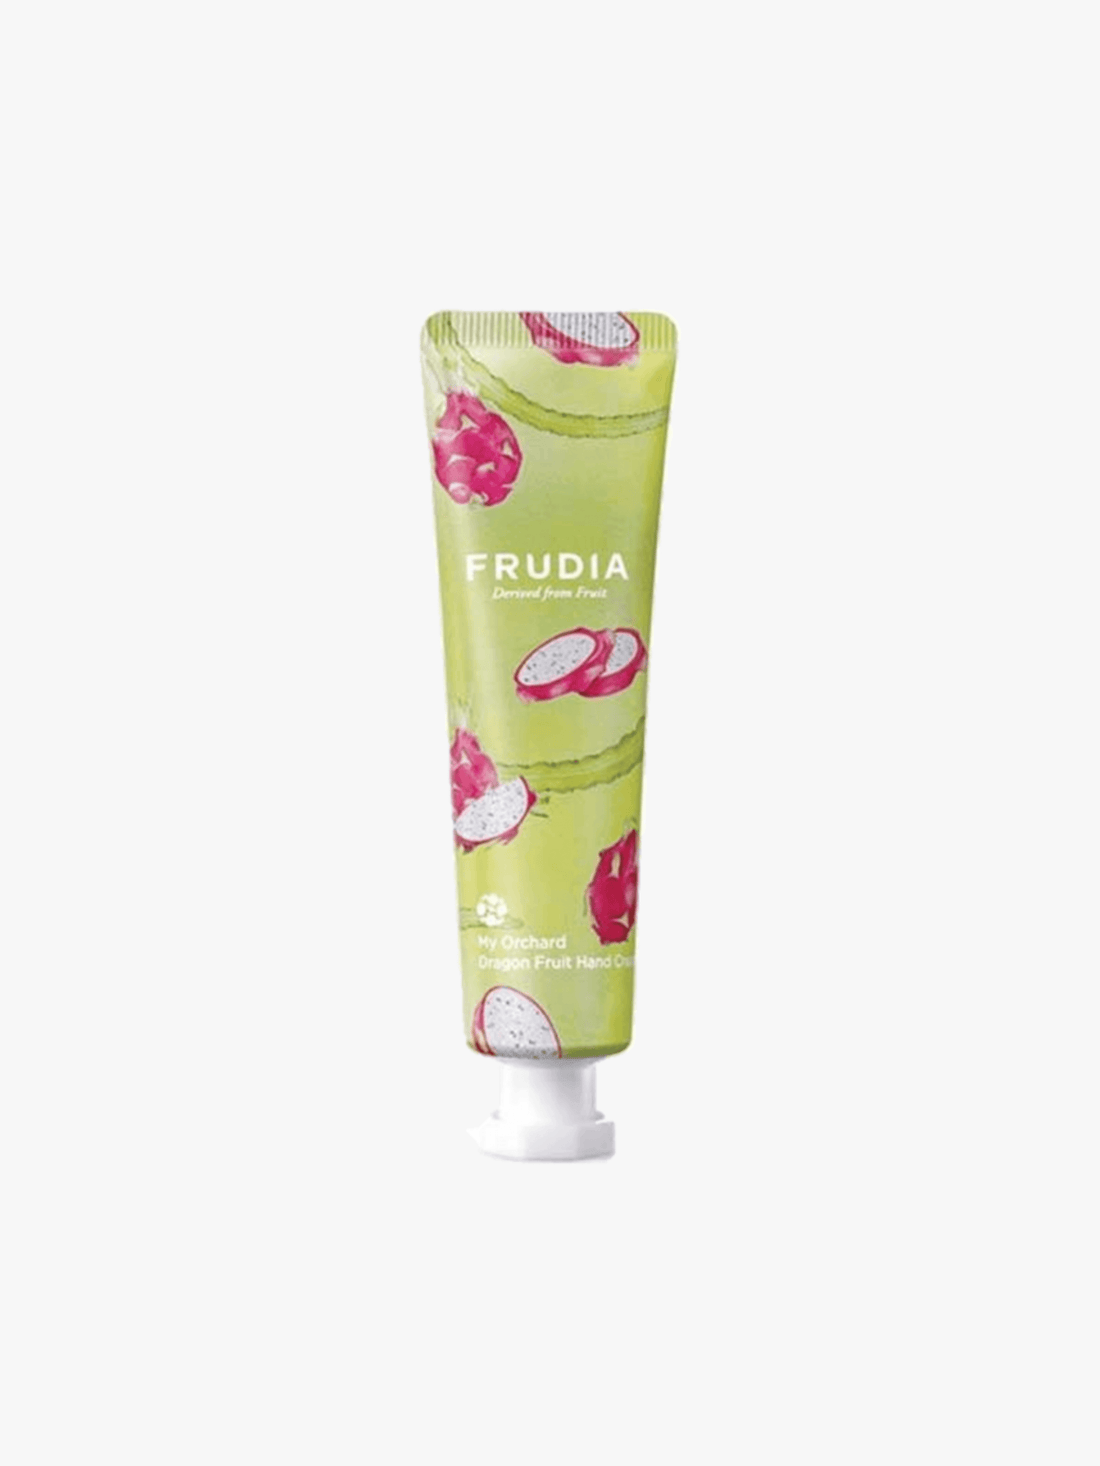 Frudia - Crème pour les mains - My Orchard Hand Cream Dragon Fruit